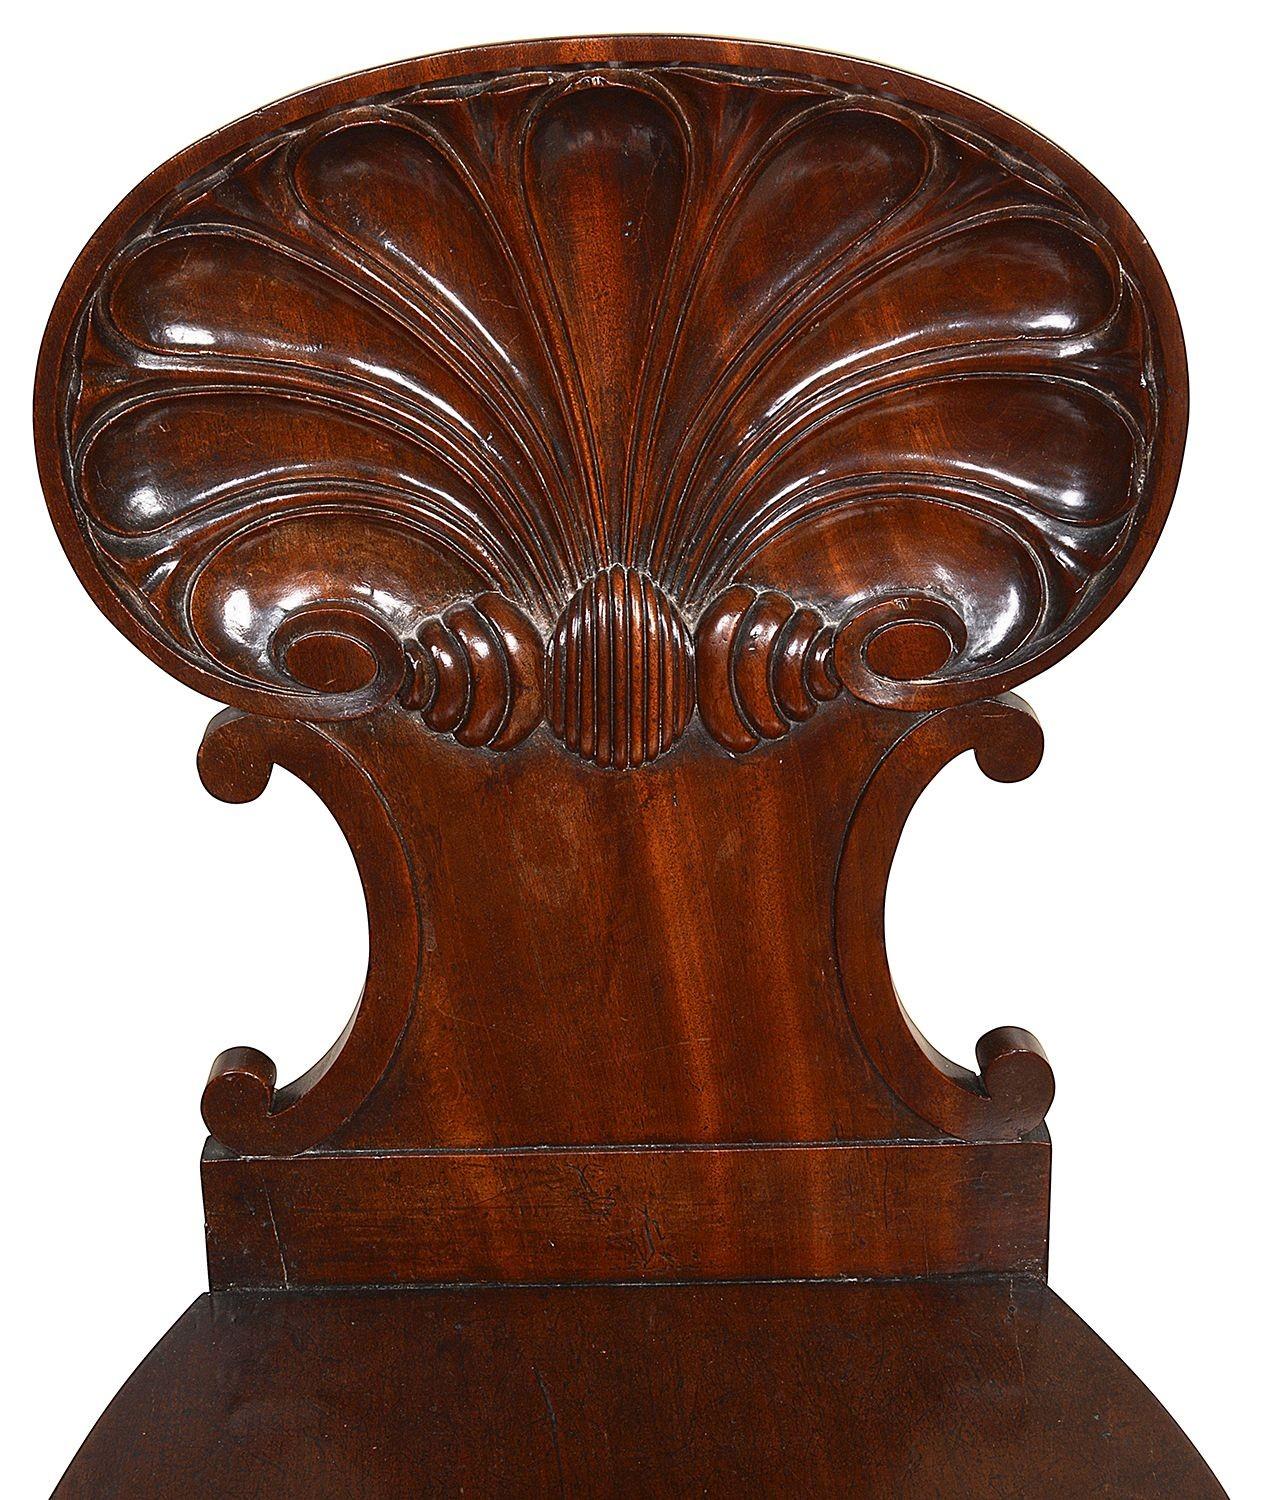 Eine sehr gute Qualität Satz von drei Regency-Periode Mahagoni Gillow Shell zurück Halle Stühle, wunderbar geschnitzt, Original-Patina, auf elegante aus gefegt Sabra Beine erhöht.
60925 BUNLZ.